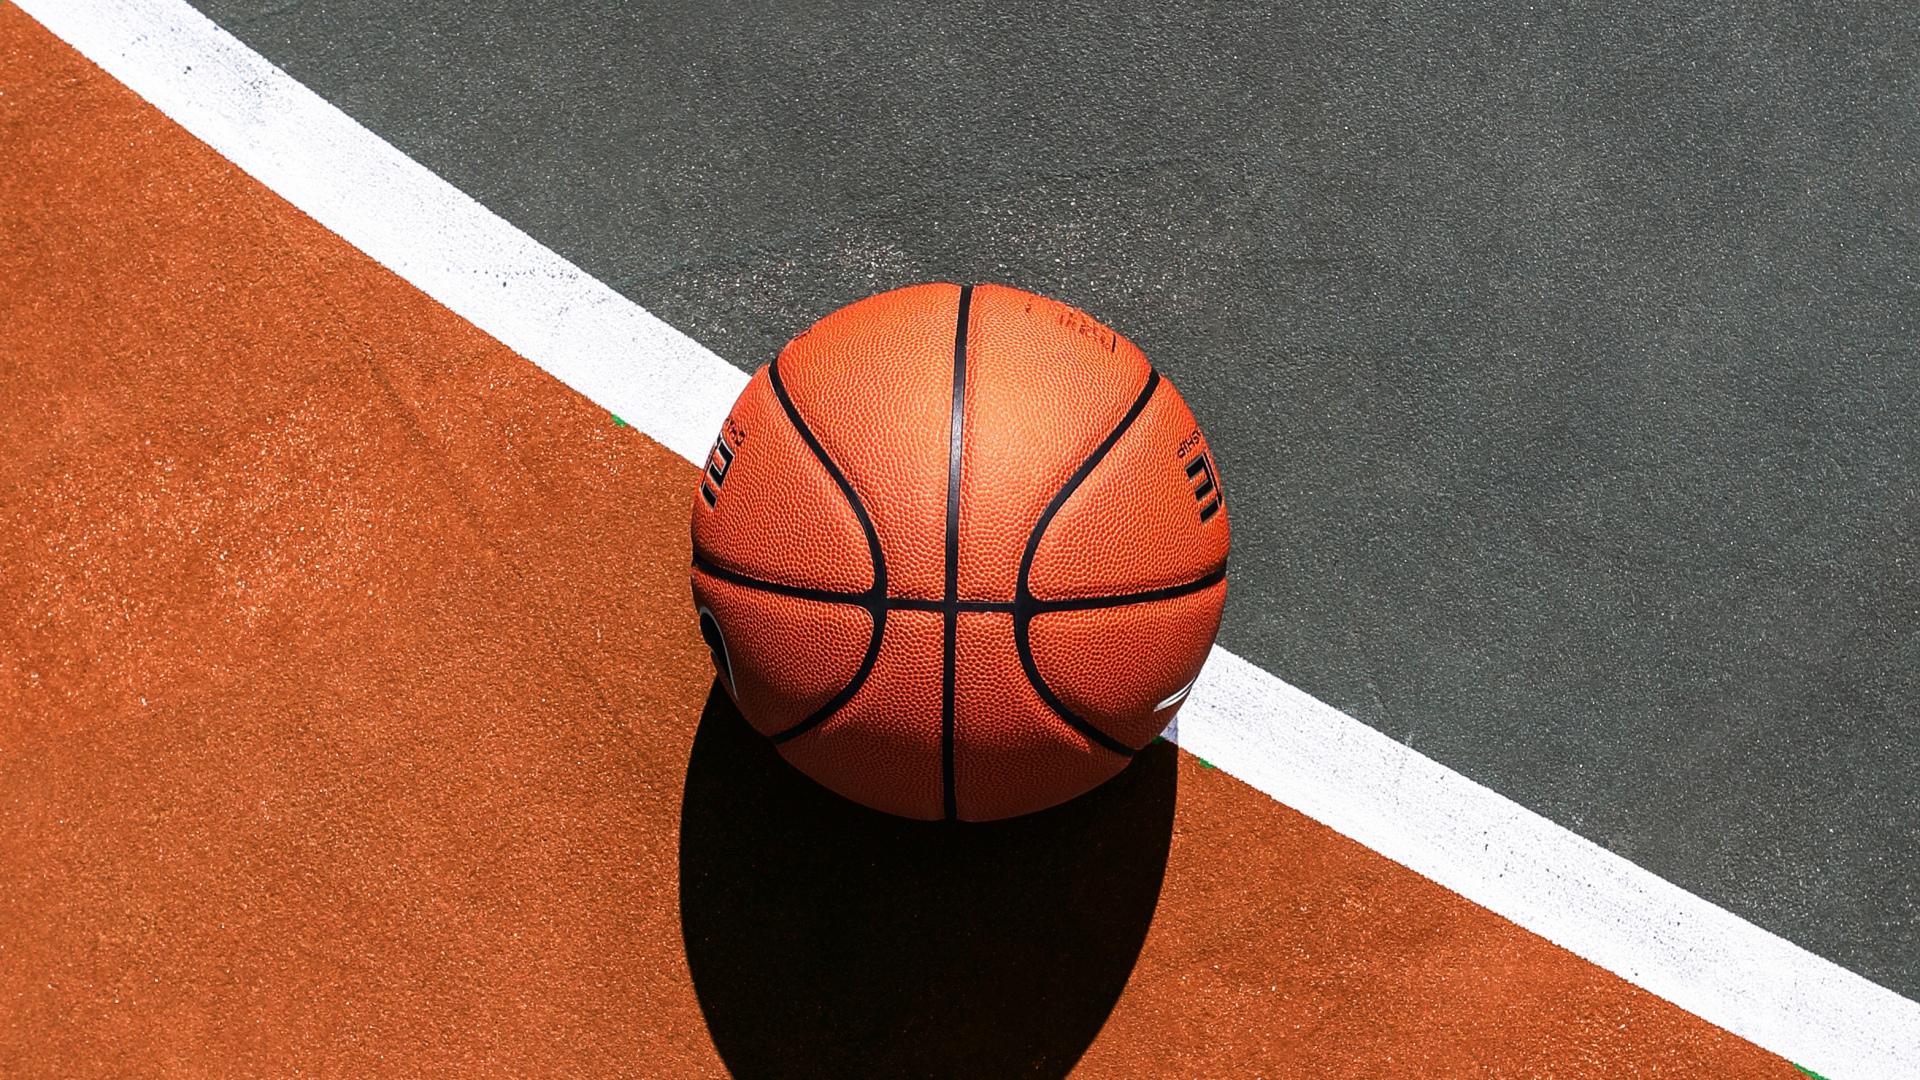 1920 x 1080 · jpeg - Basketball. Desktop wallpaper. 1920x1080